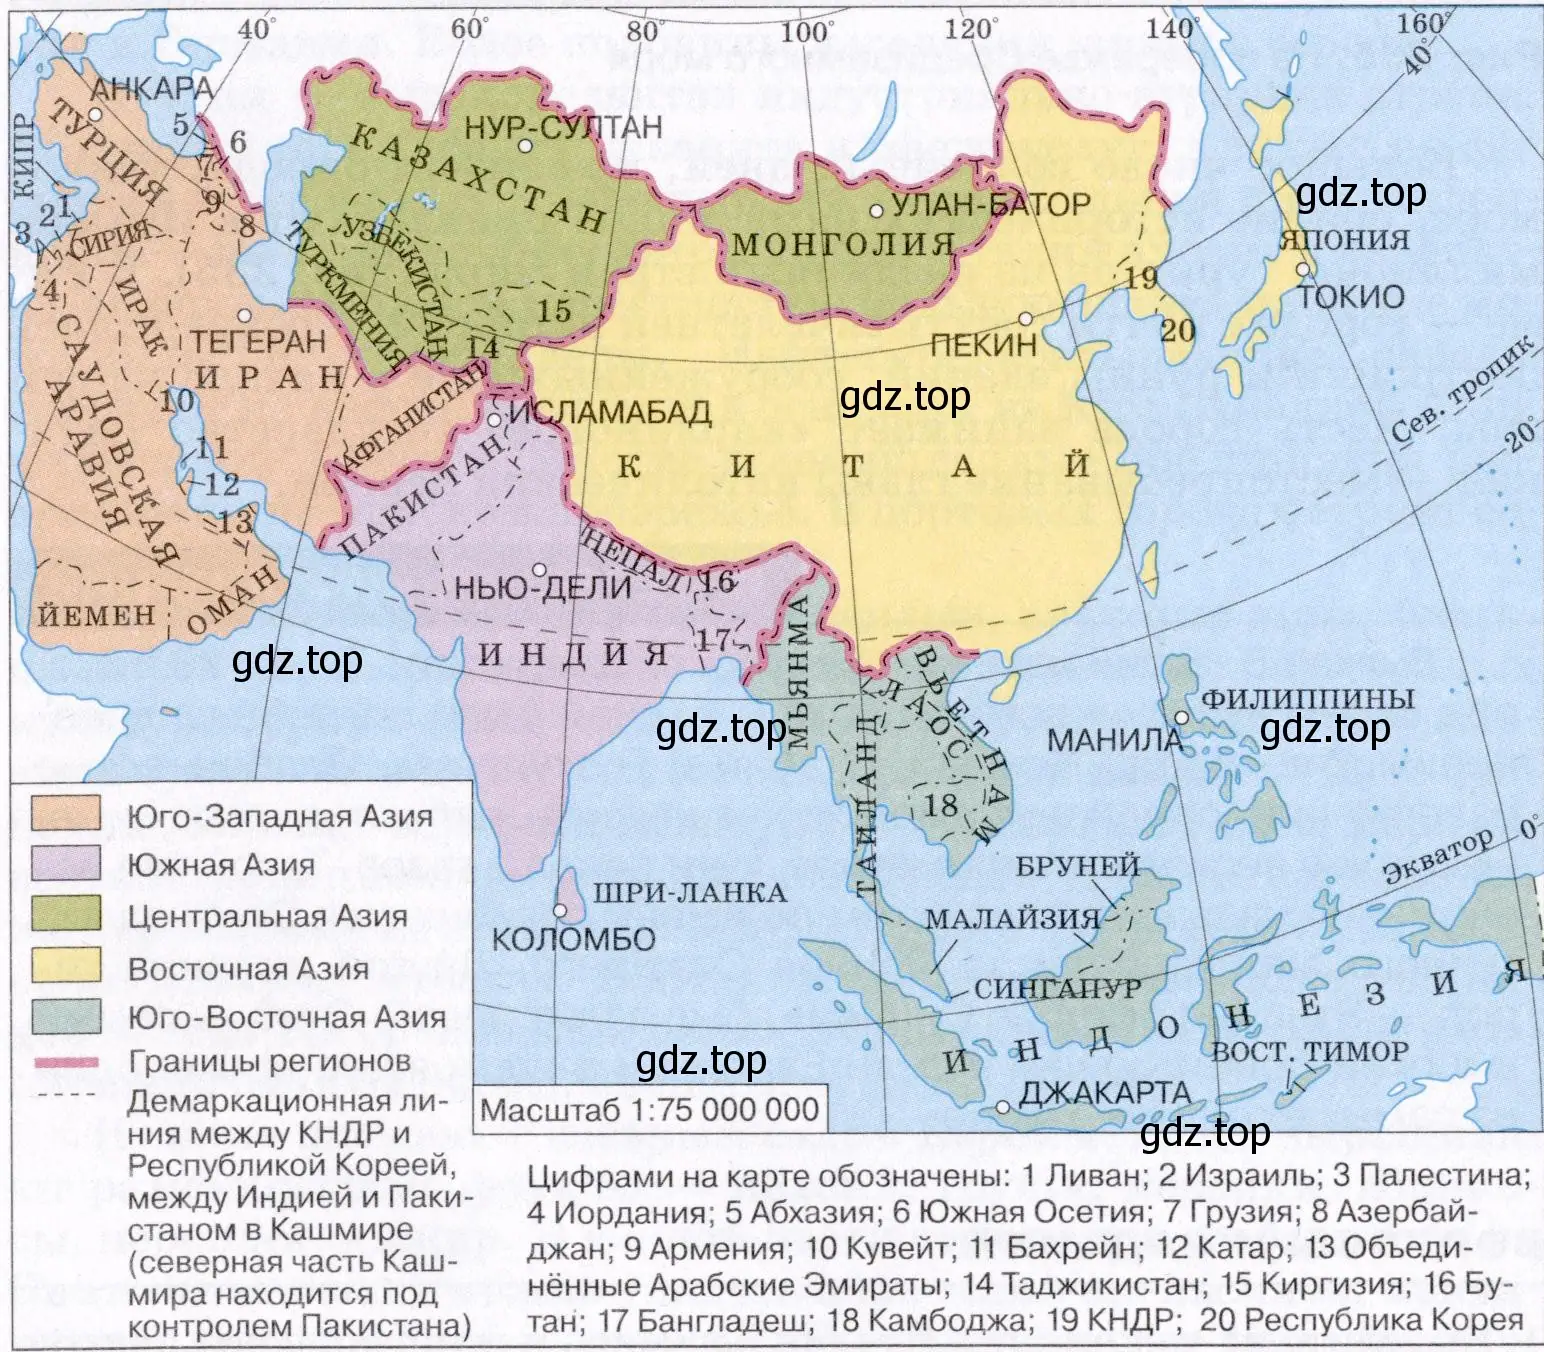 Самые крупные государства Юго-Западной Азии и их столицы